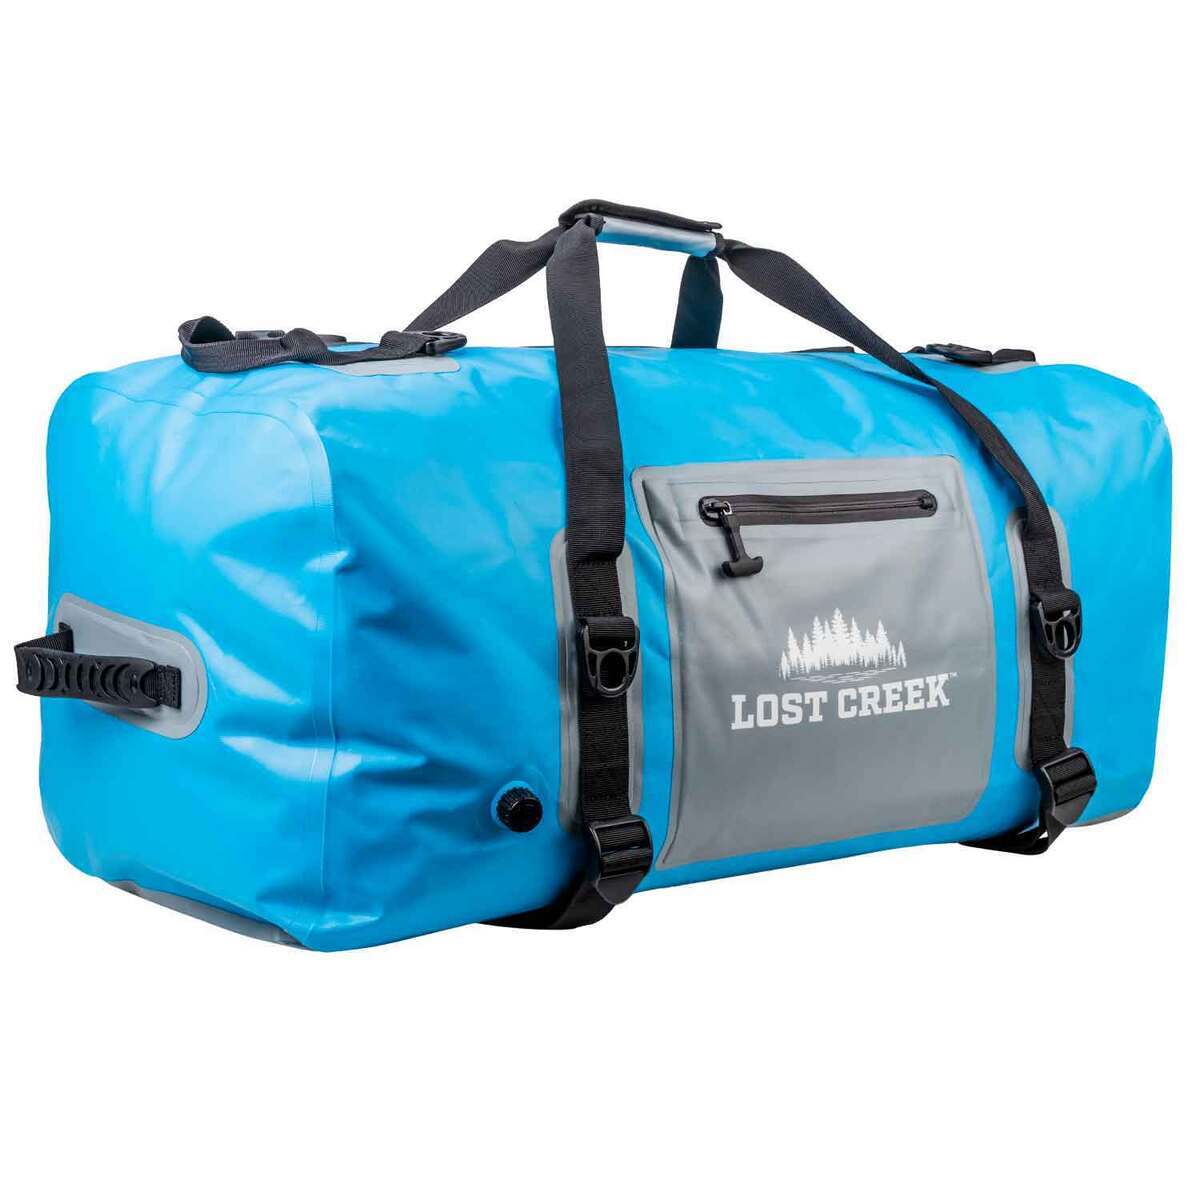 Lost Creek 110 Liter Waterproof Duffel Bag - Blue by Sportsman's Warehouse